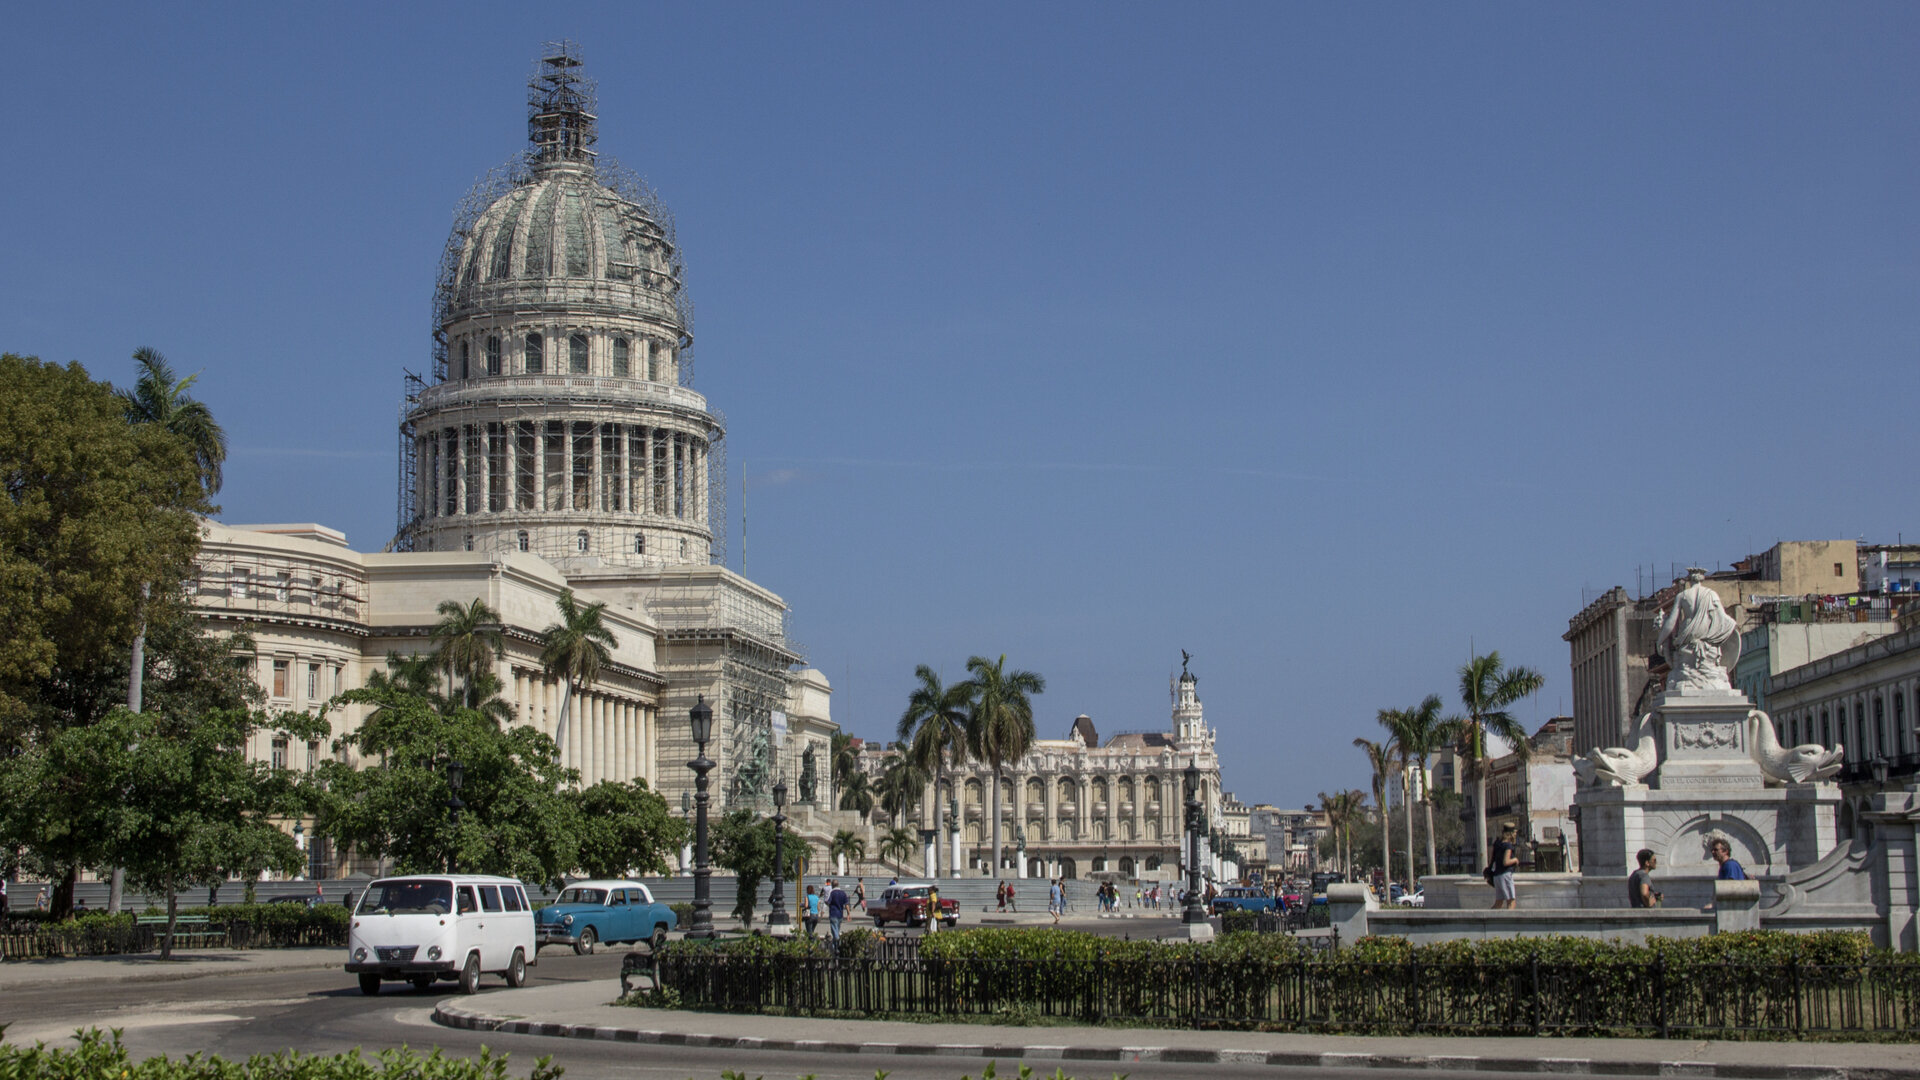  In 1926 El Capitolio de Havana was completed 